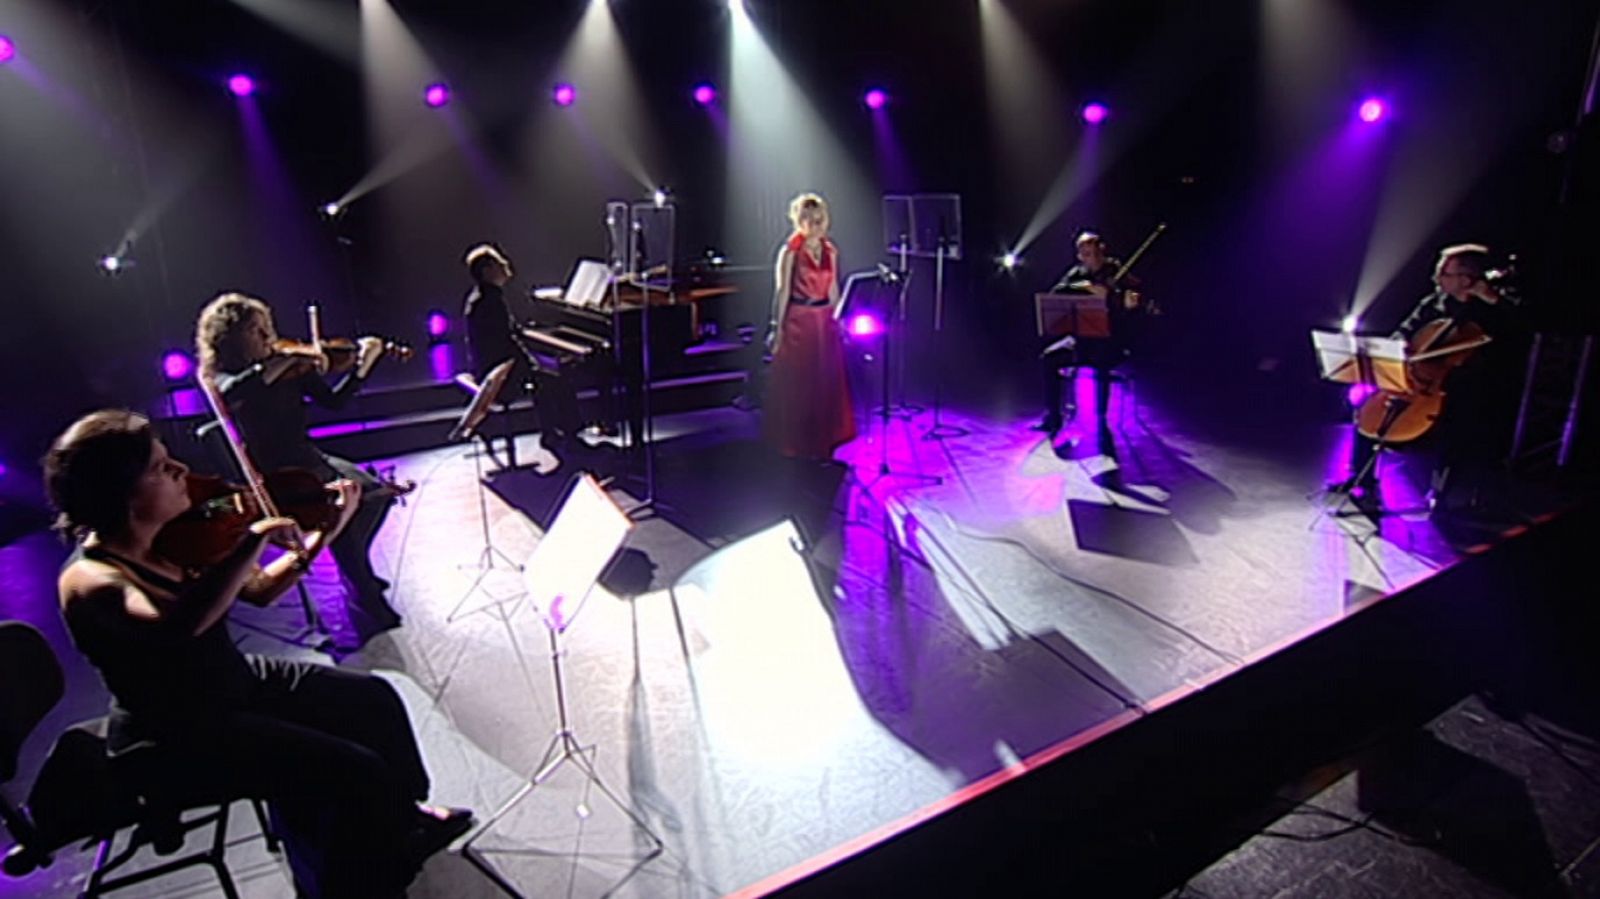 Los conciertos de La 2 - Paloma Chisbert Sexteto voz+cuerdas+piano - RTVE.es